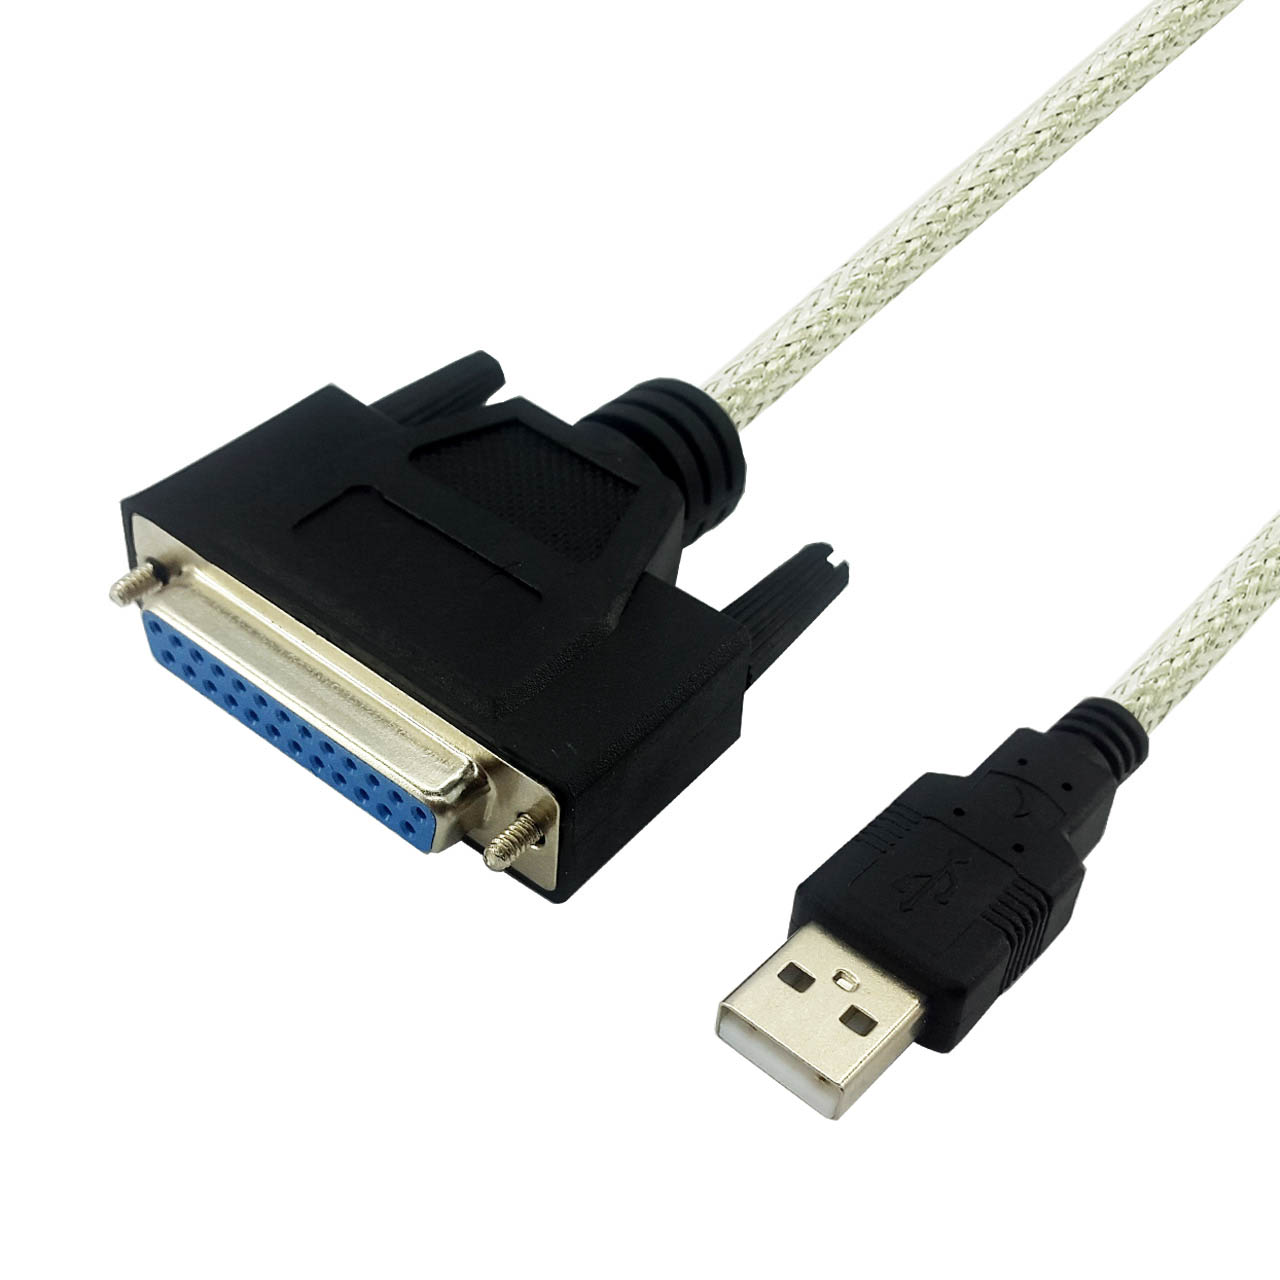 کابل تبدیل USB به Parallel مدل D25 طول 1.5 متر